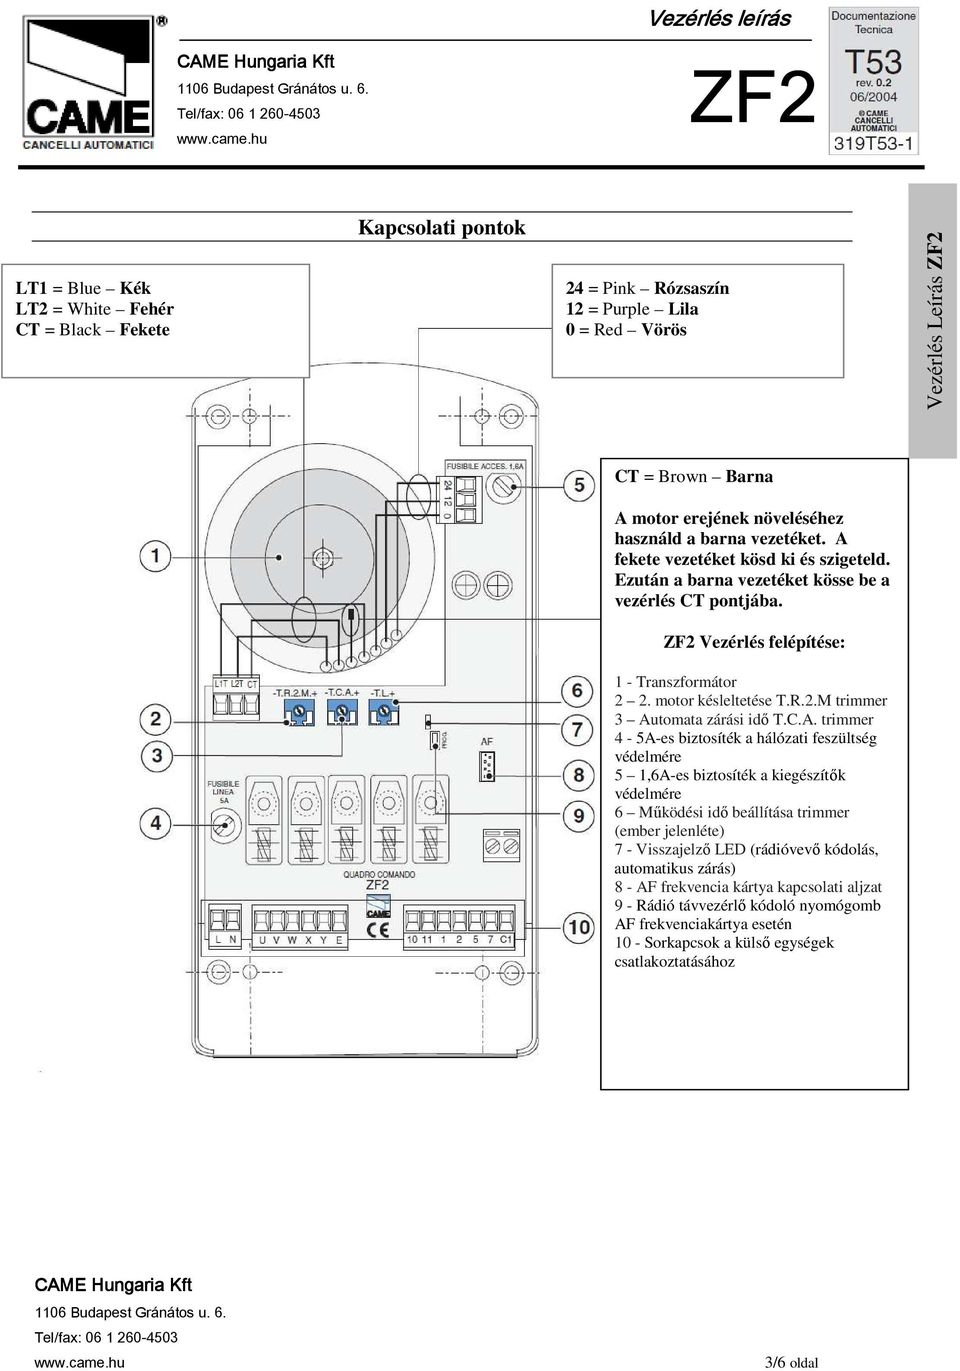 C.A. trimmer 4-5A-es biztosíték a hálózati feszültség védelmére 5 1,6A-es biztosíték a kiegészítık védelmére 6 Mőködési idı beállítása trimmer (ember jelenléte) 7 - Visszajelzı LED (rádióvevı